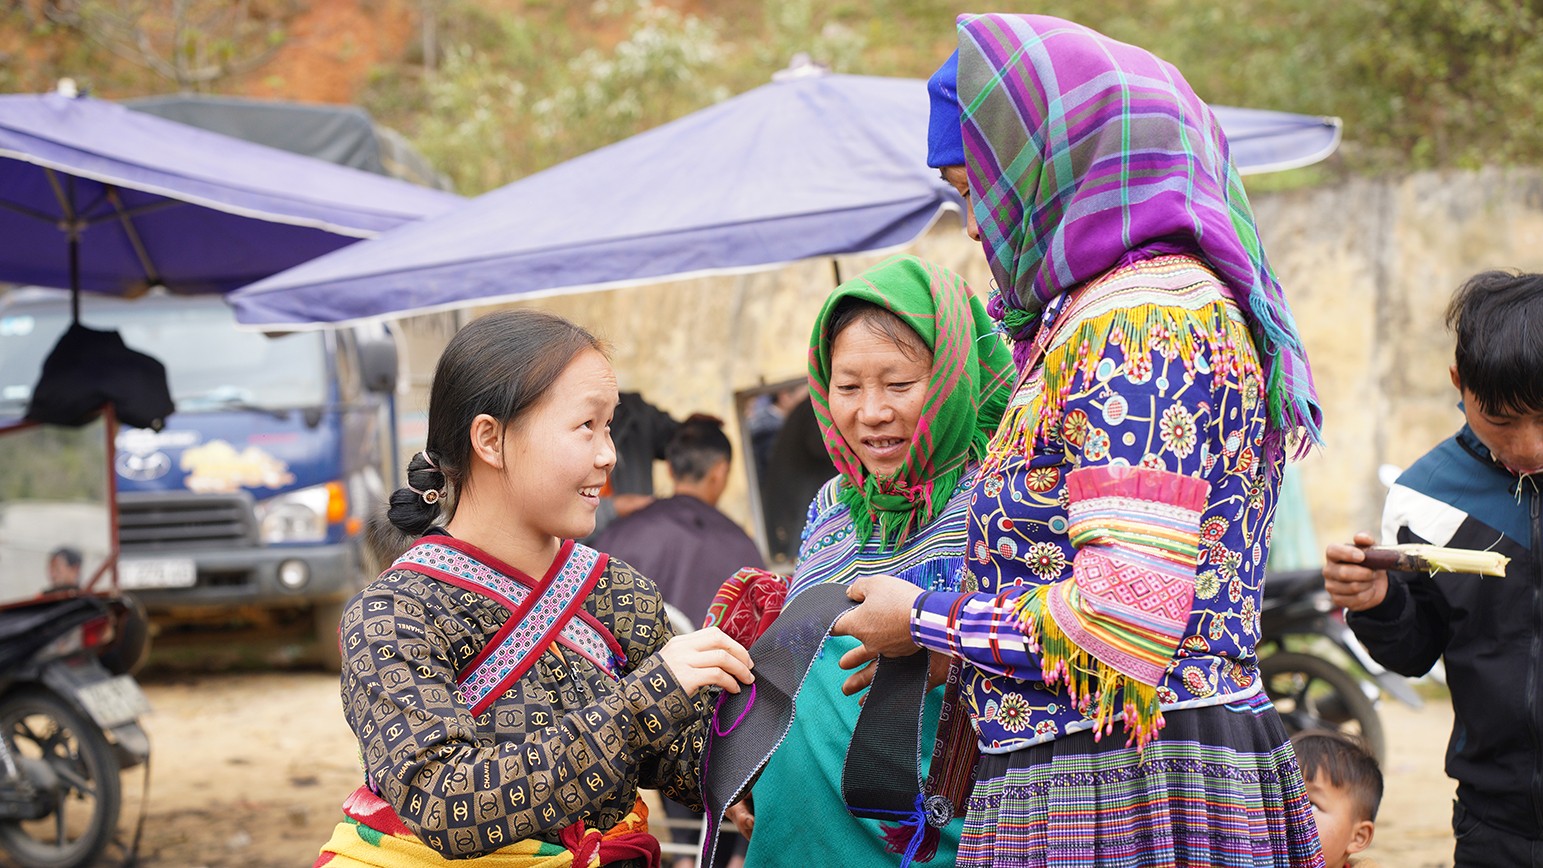 Sẽ không khó để khách du lịch có thể bắt gặp những người dân tộc trong bộ đồ rực rỡ với nhiều màu sắc mang nét truyền thống đang tíu tít chuyện trò